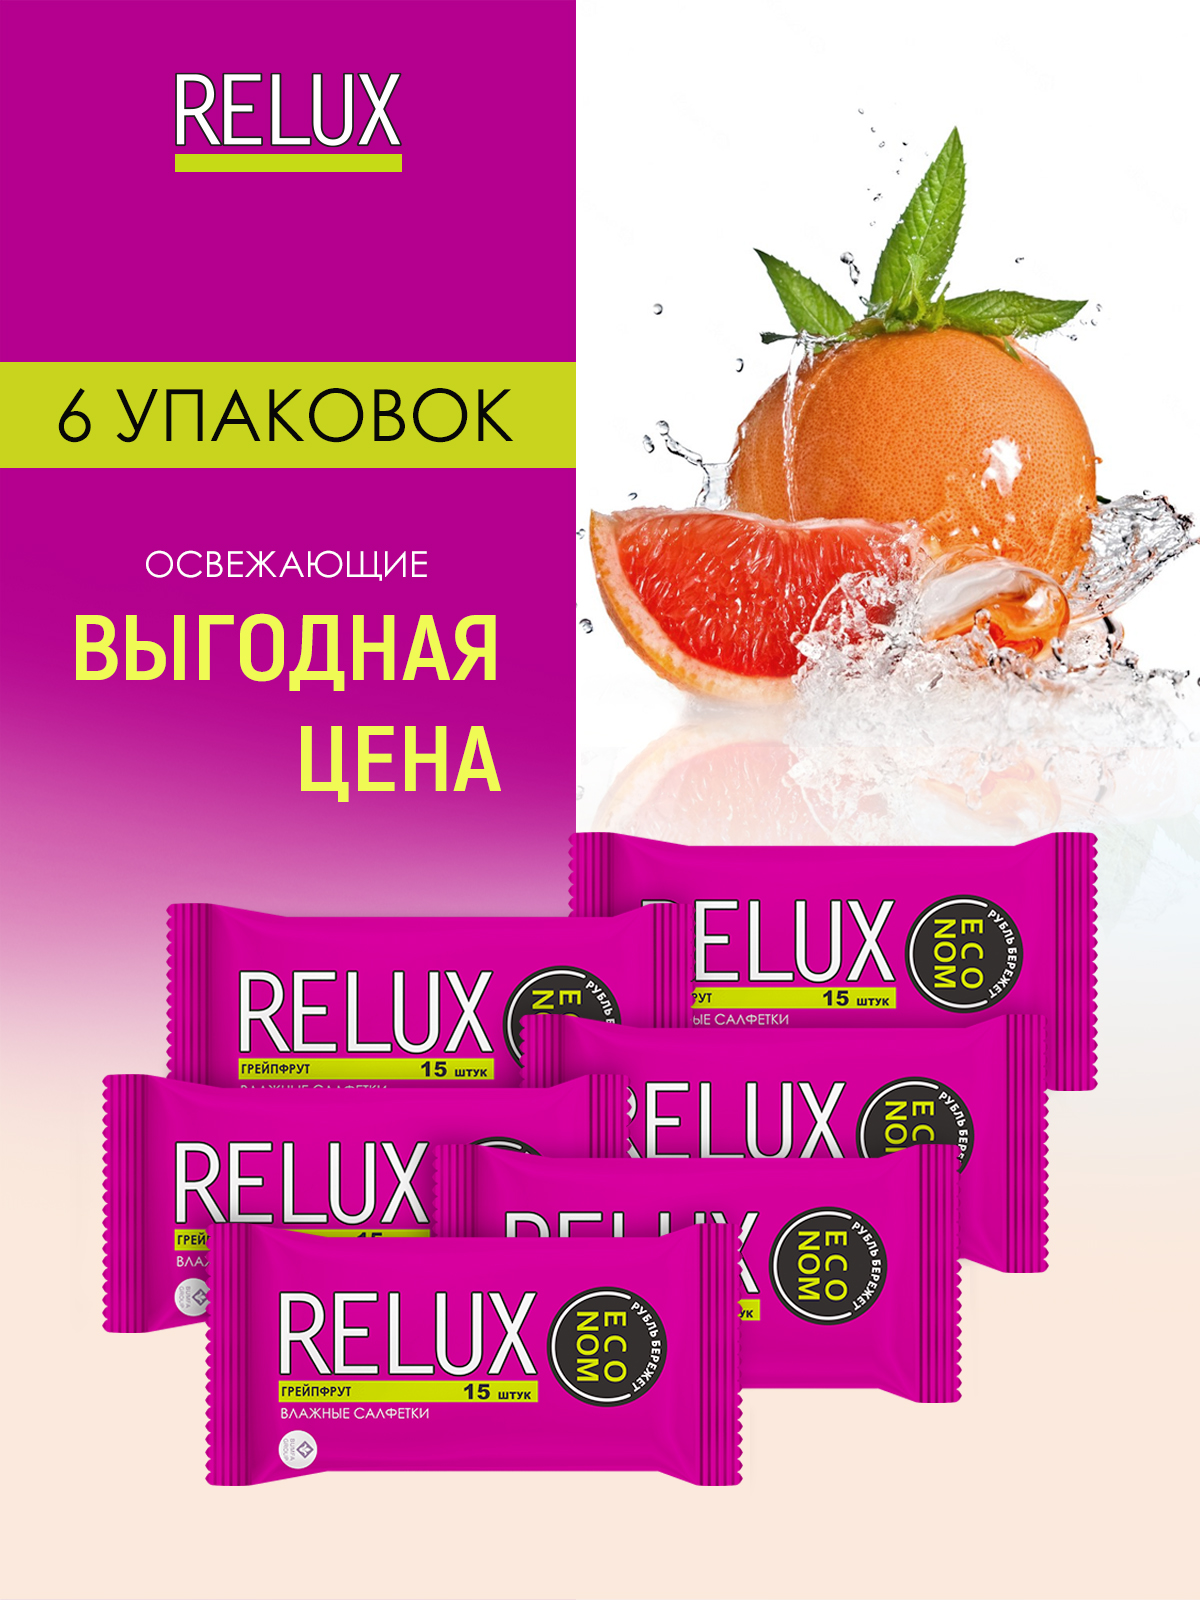 Салфетки влажные Relux освежающие грейпфрут 15шт 6 упаковок relux салфетки влажные освежающие грейпфрут 15 0